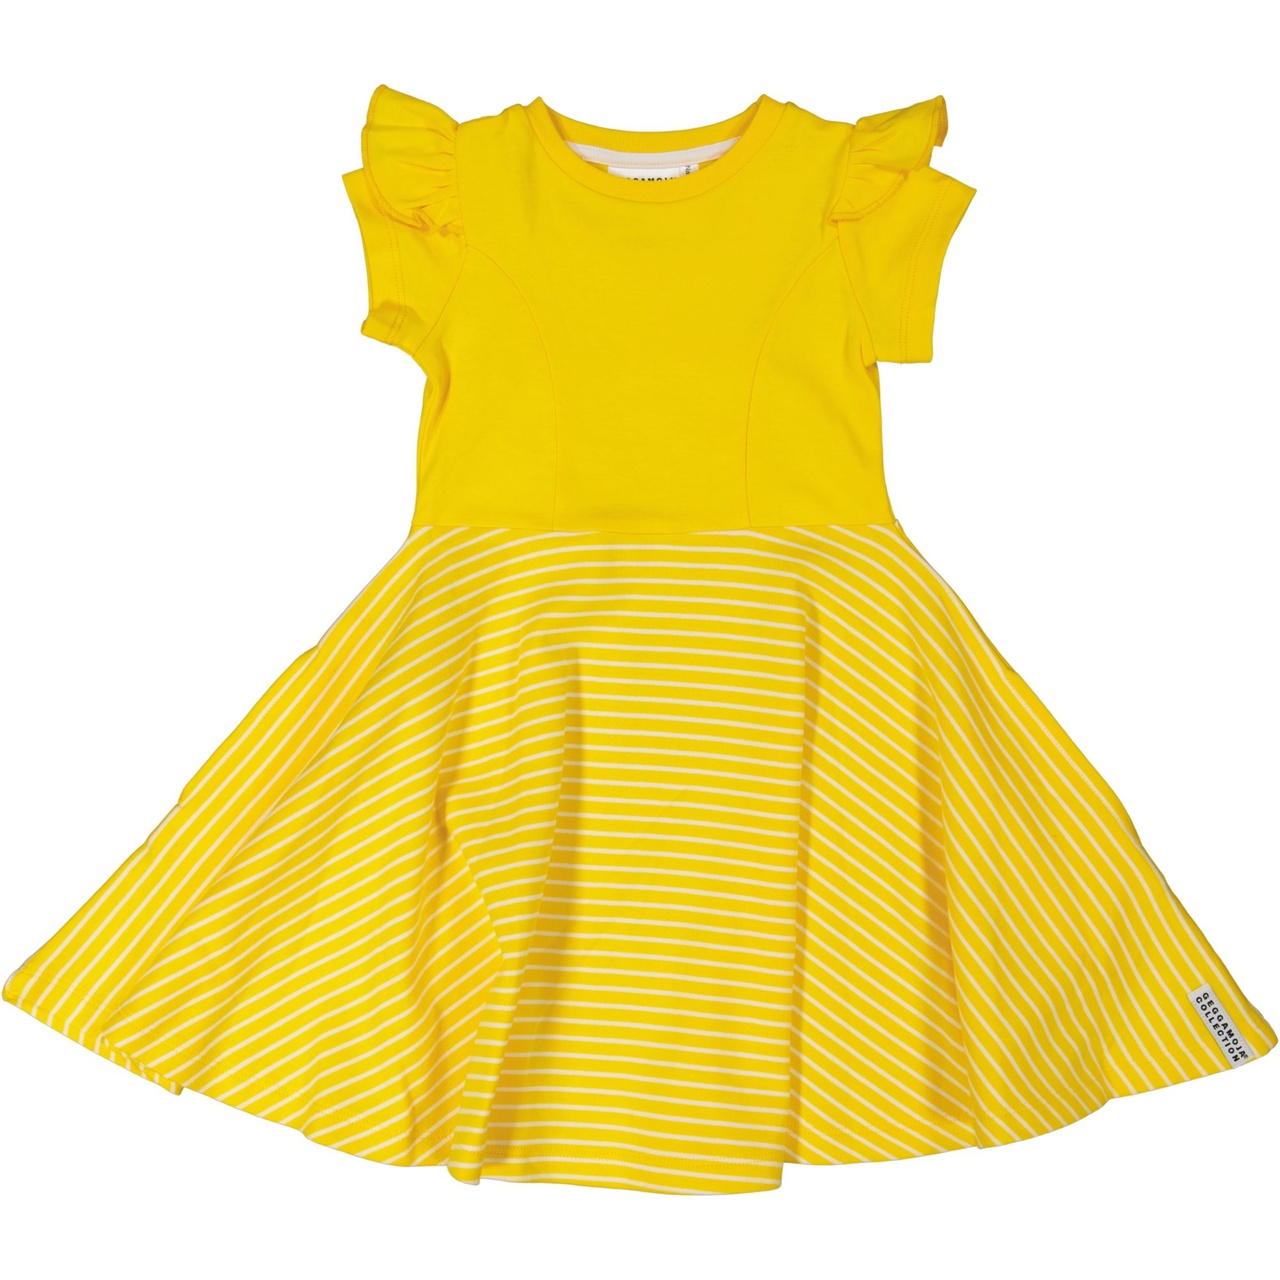 Flared dress Yellow/white  86/92